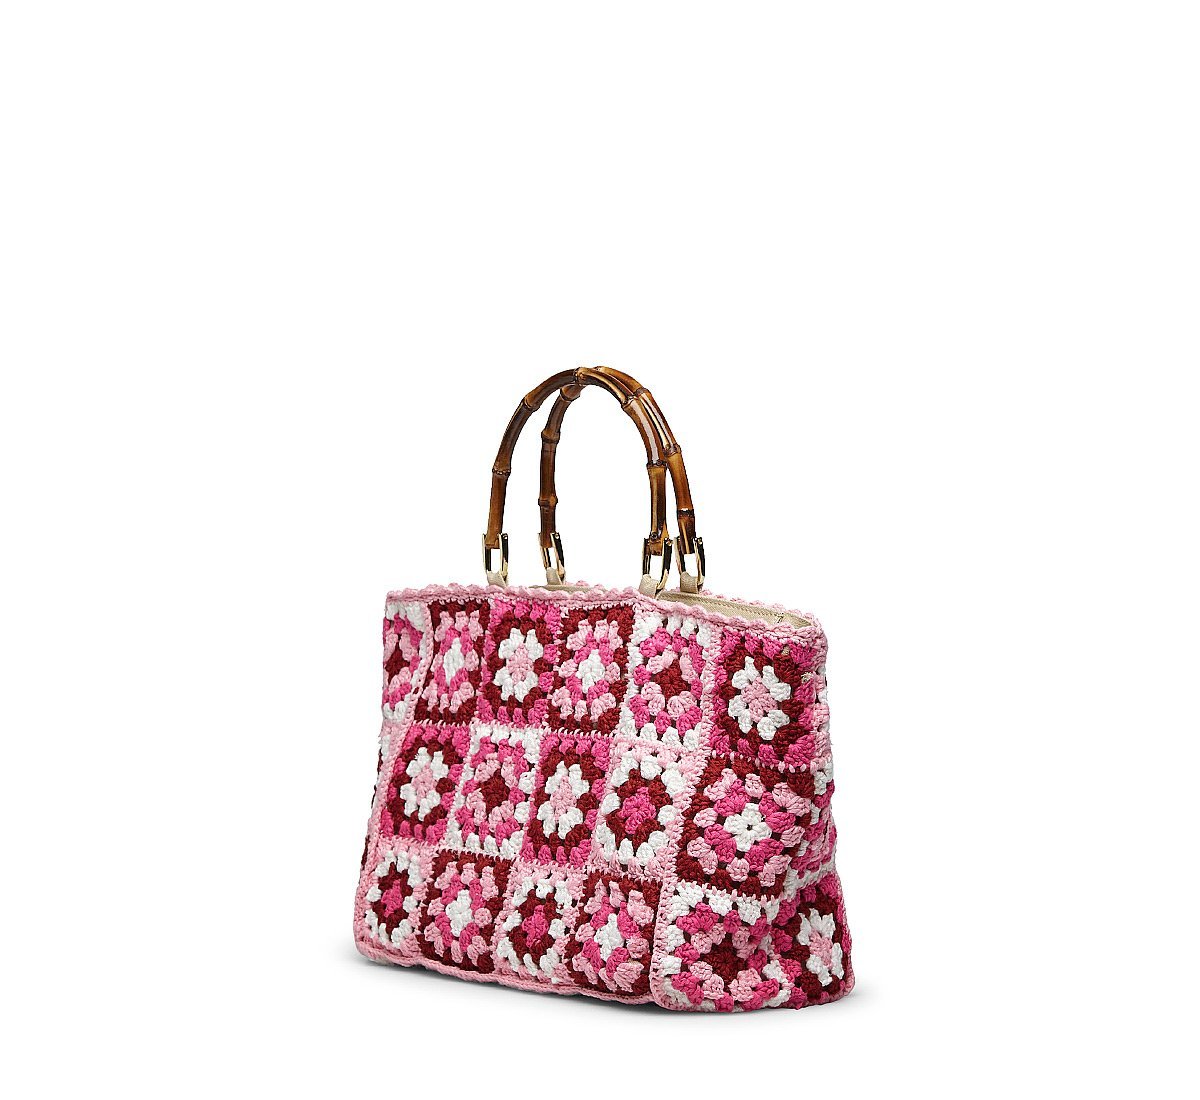 Small tricot handbag